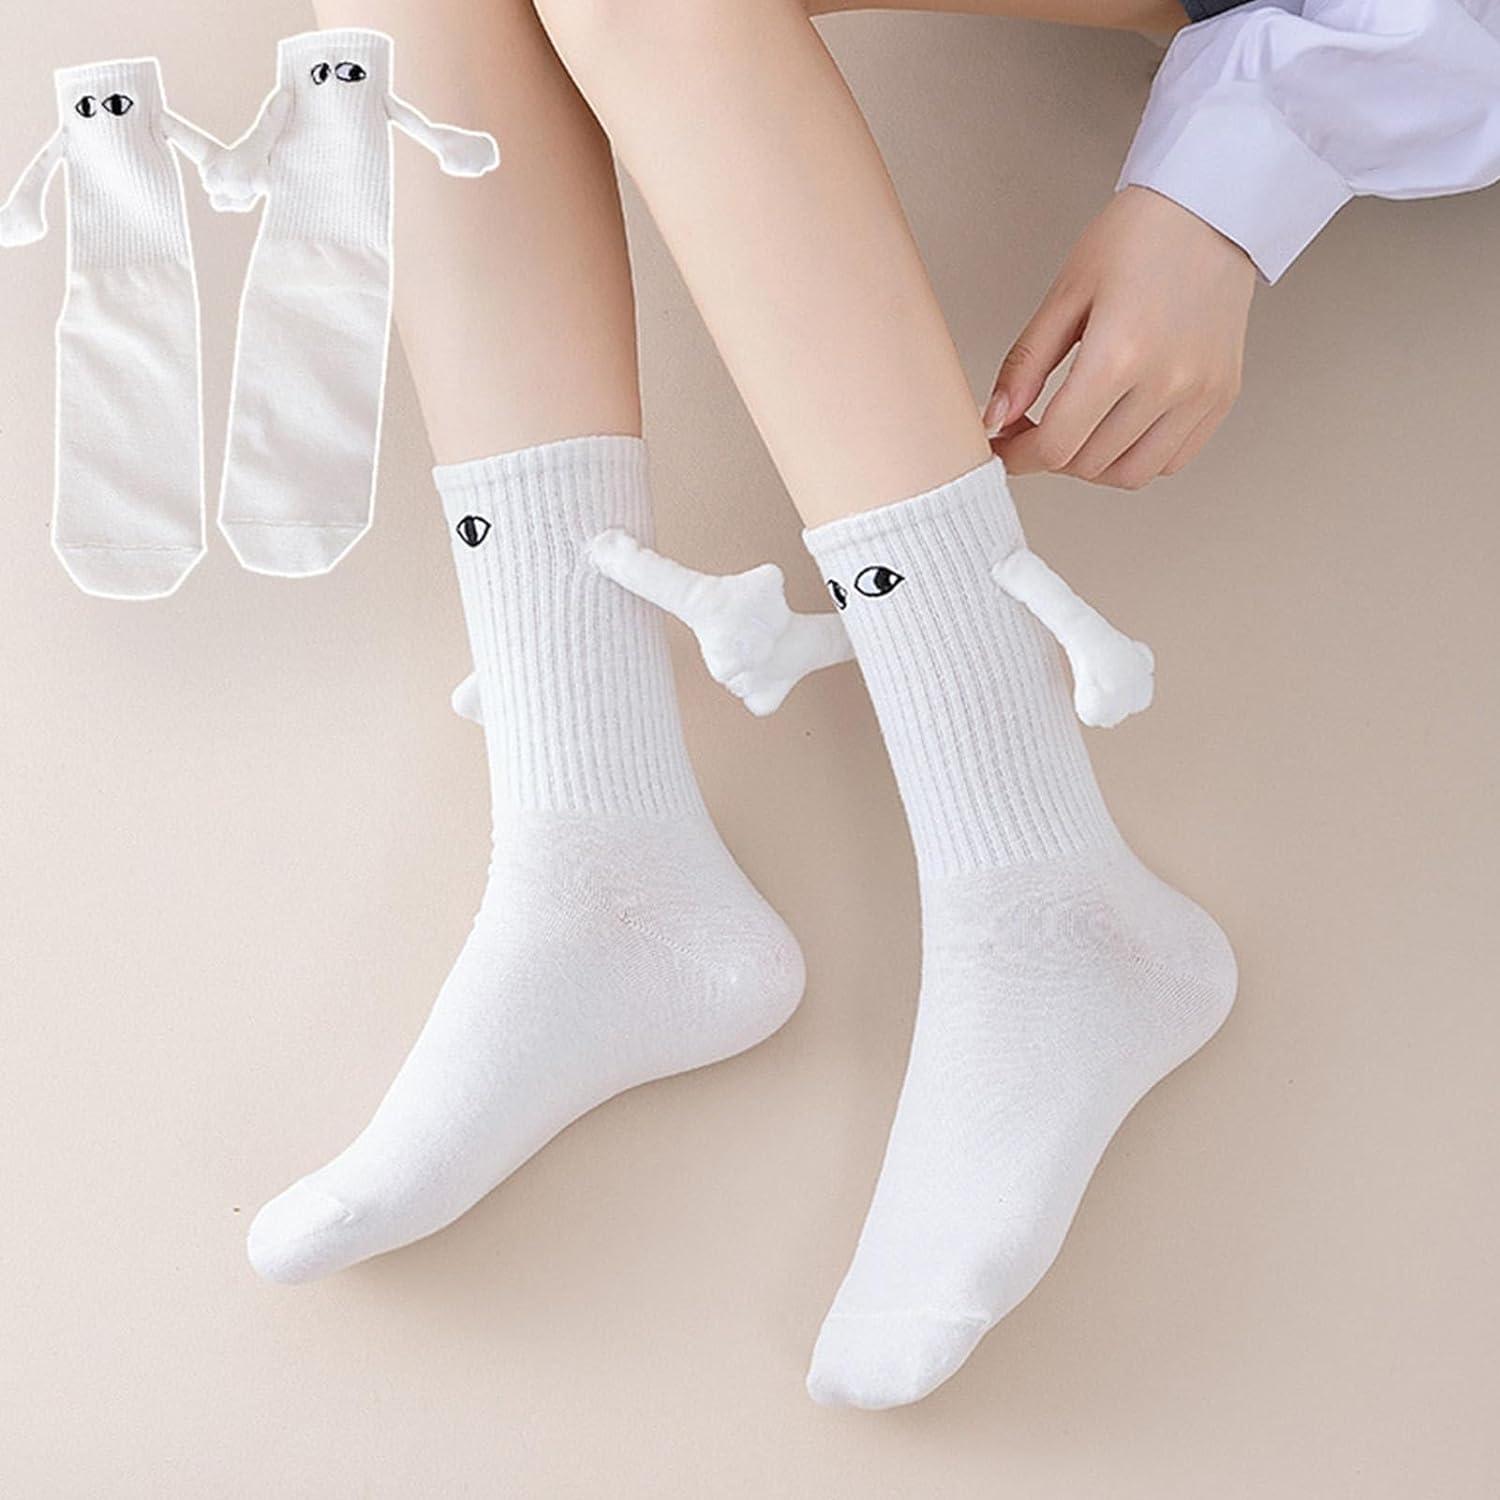 Novelty Socks Exposed Women Man Novelty Funny Socks